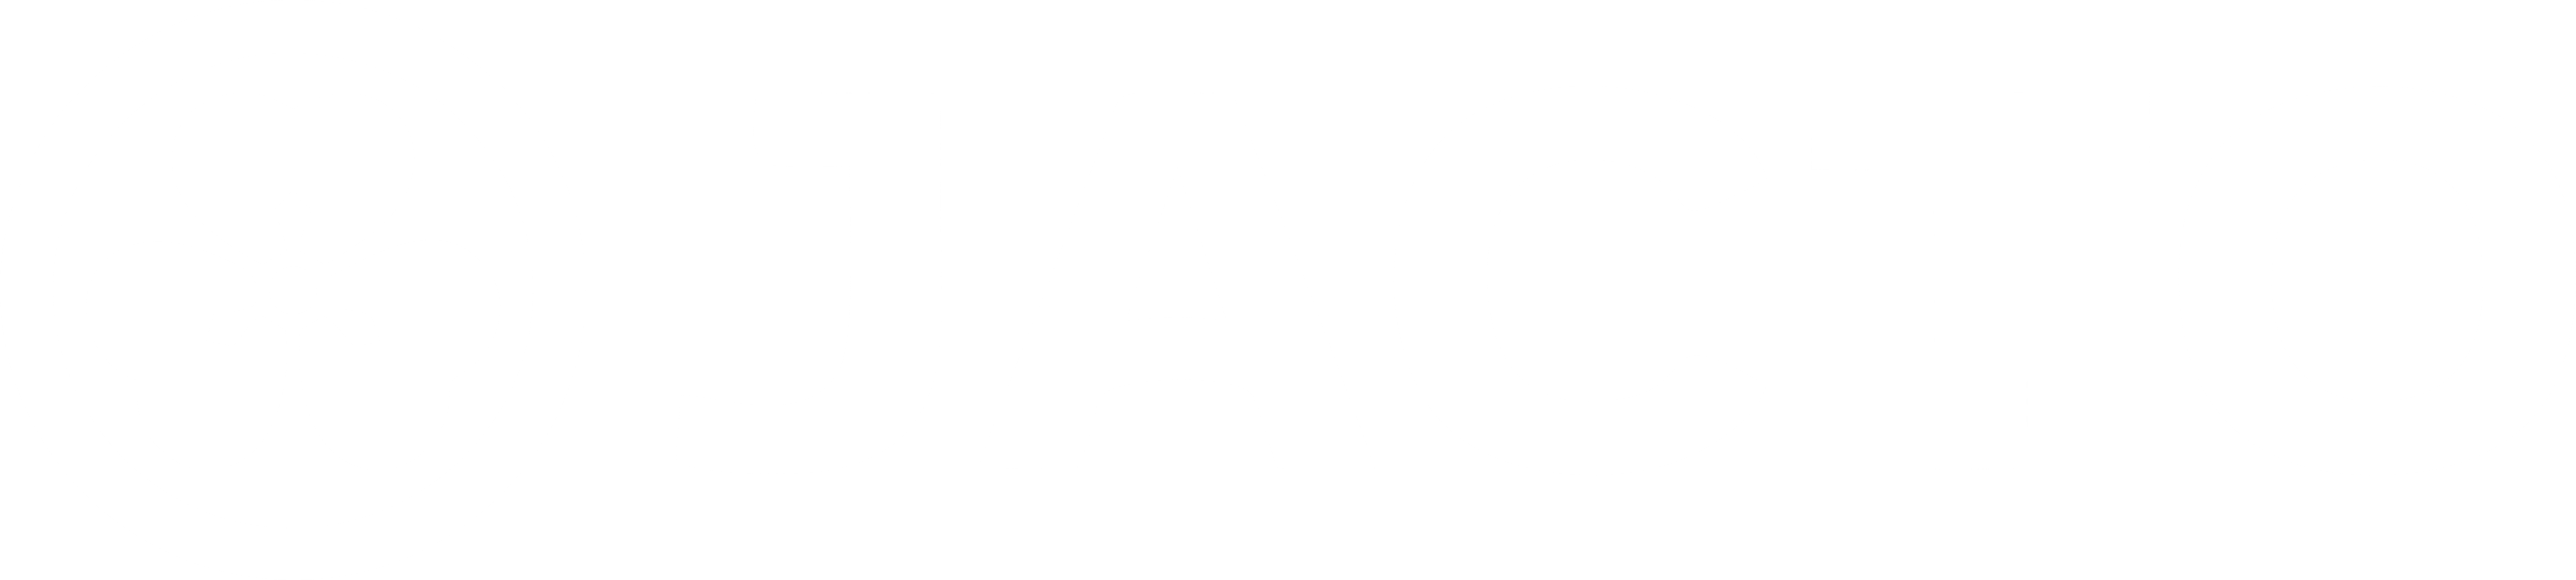 Logo do Patrocinador: Jacto